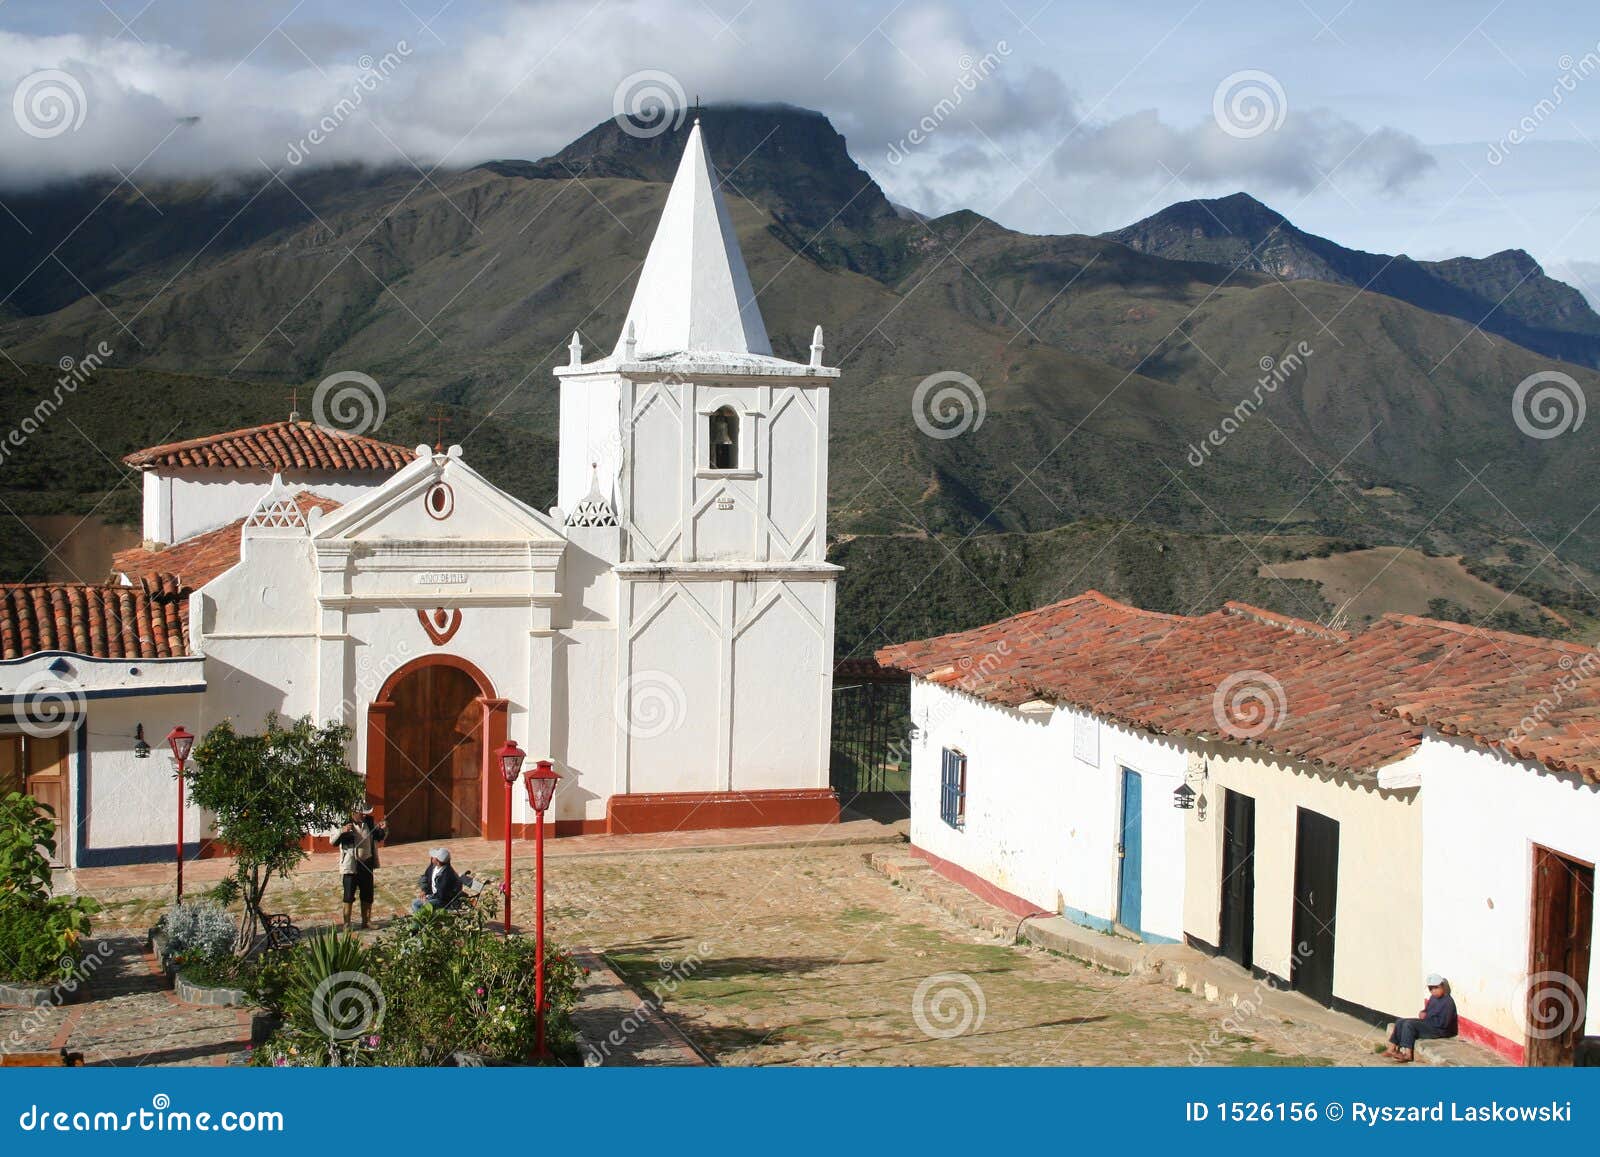 church in los nevados village